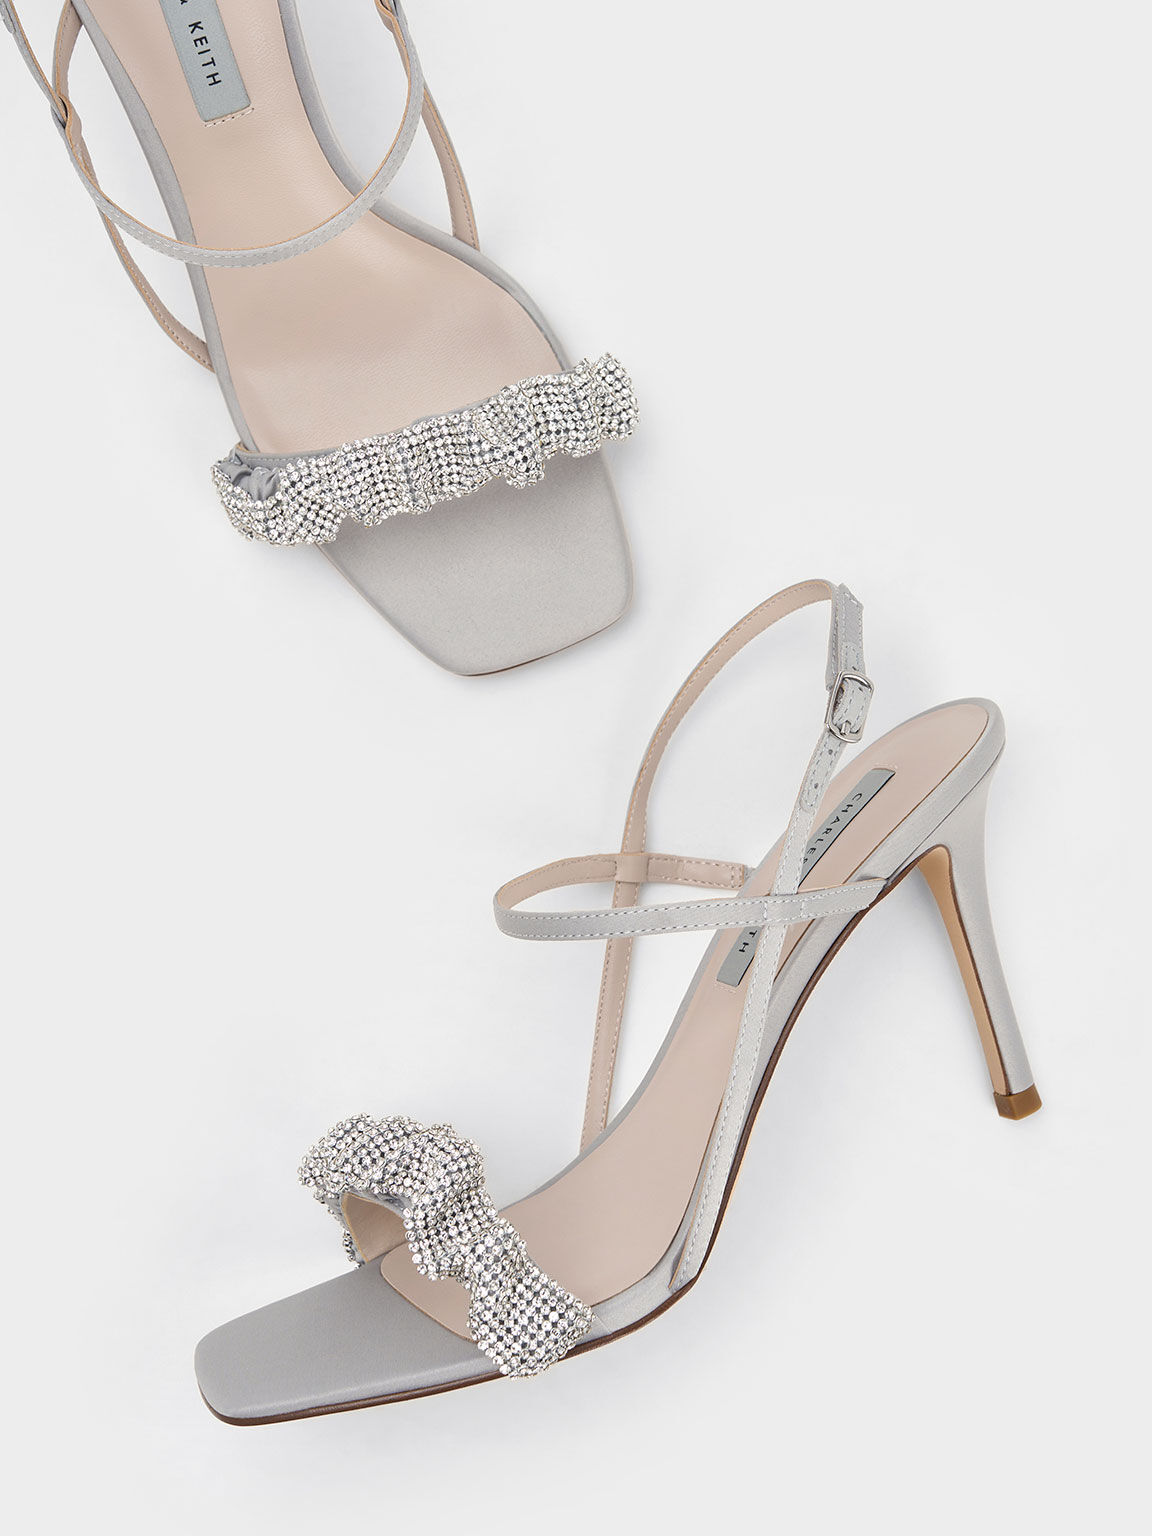 Gem-Embellished Satin Stiletto Sandals, Grey, hi-res